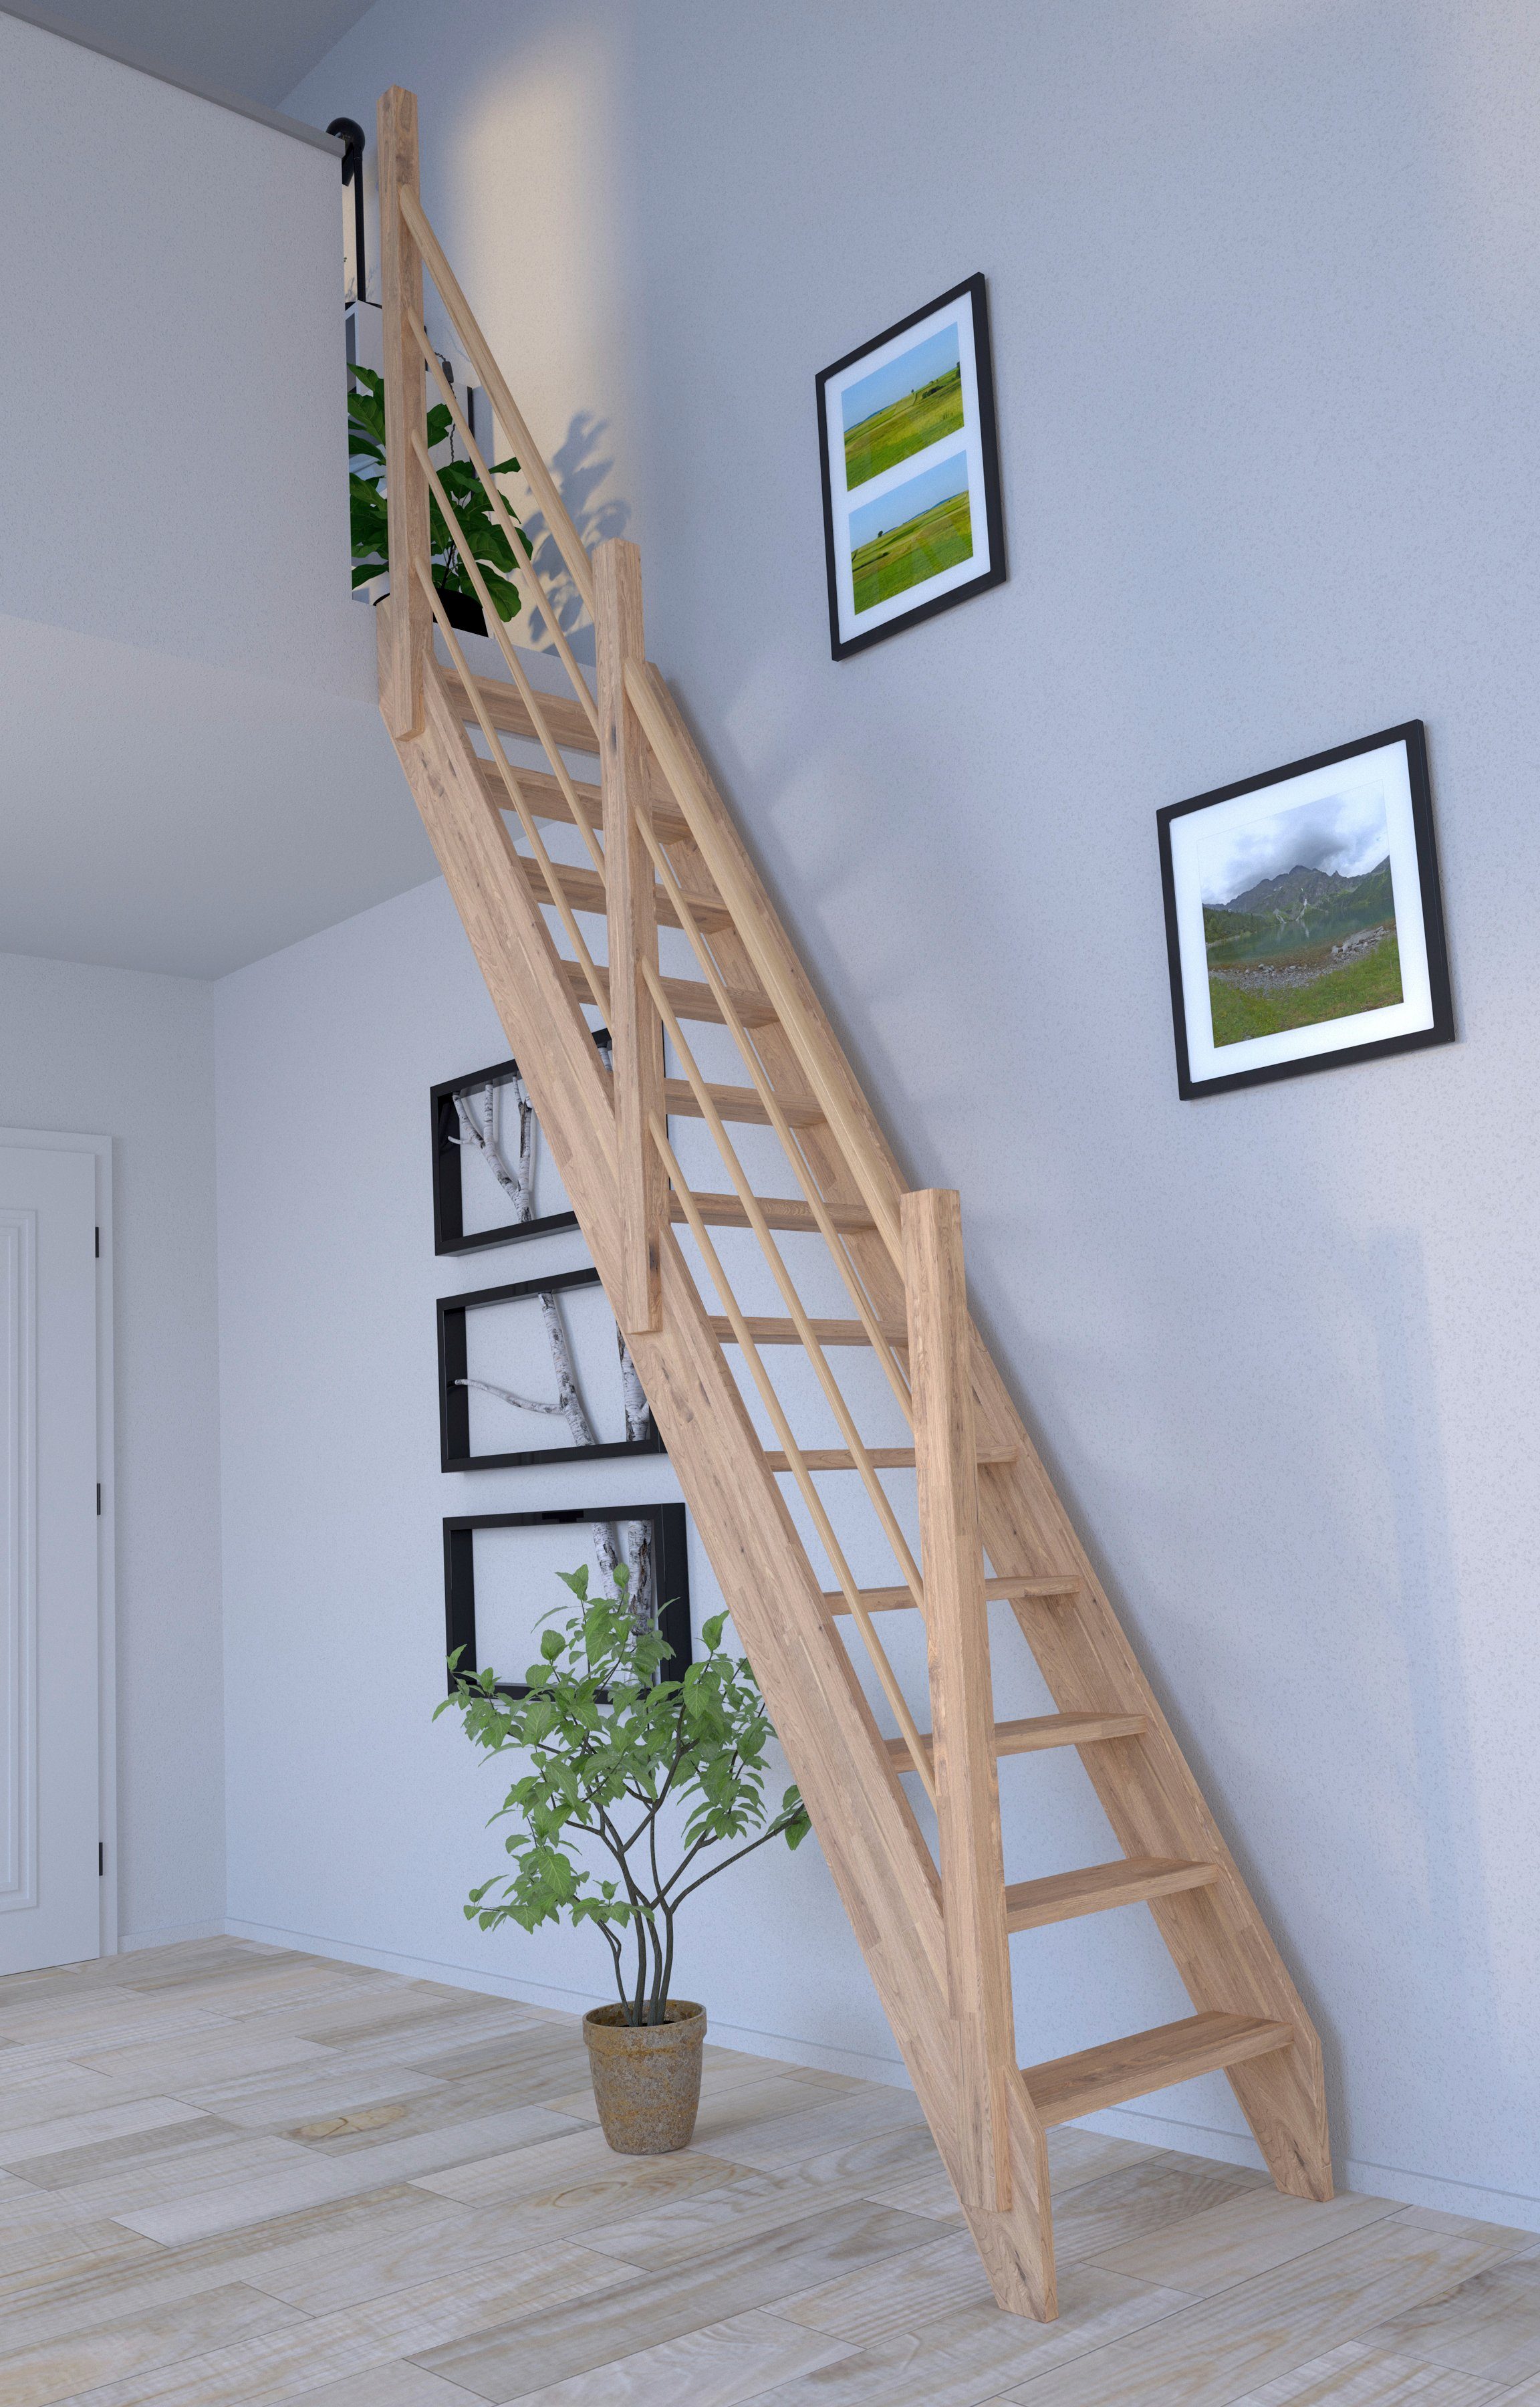 Holz-Holz offen, Rechts, 3000, Raumspartreppe Eiche Starwood Design Geländer Durchgehende Stufen Wangenteile